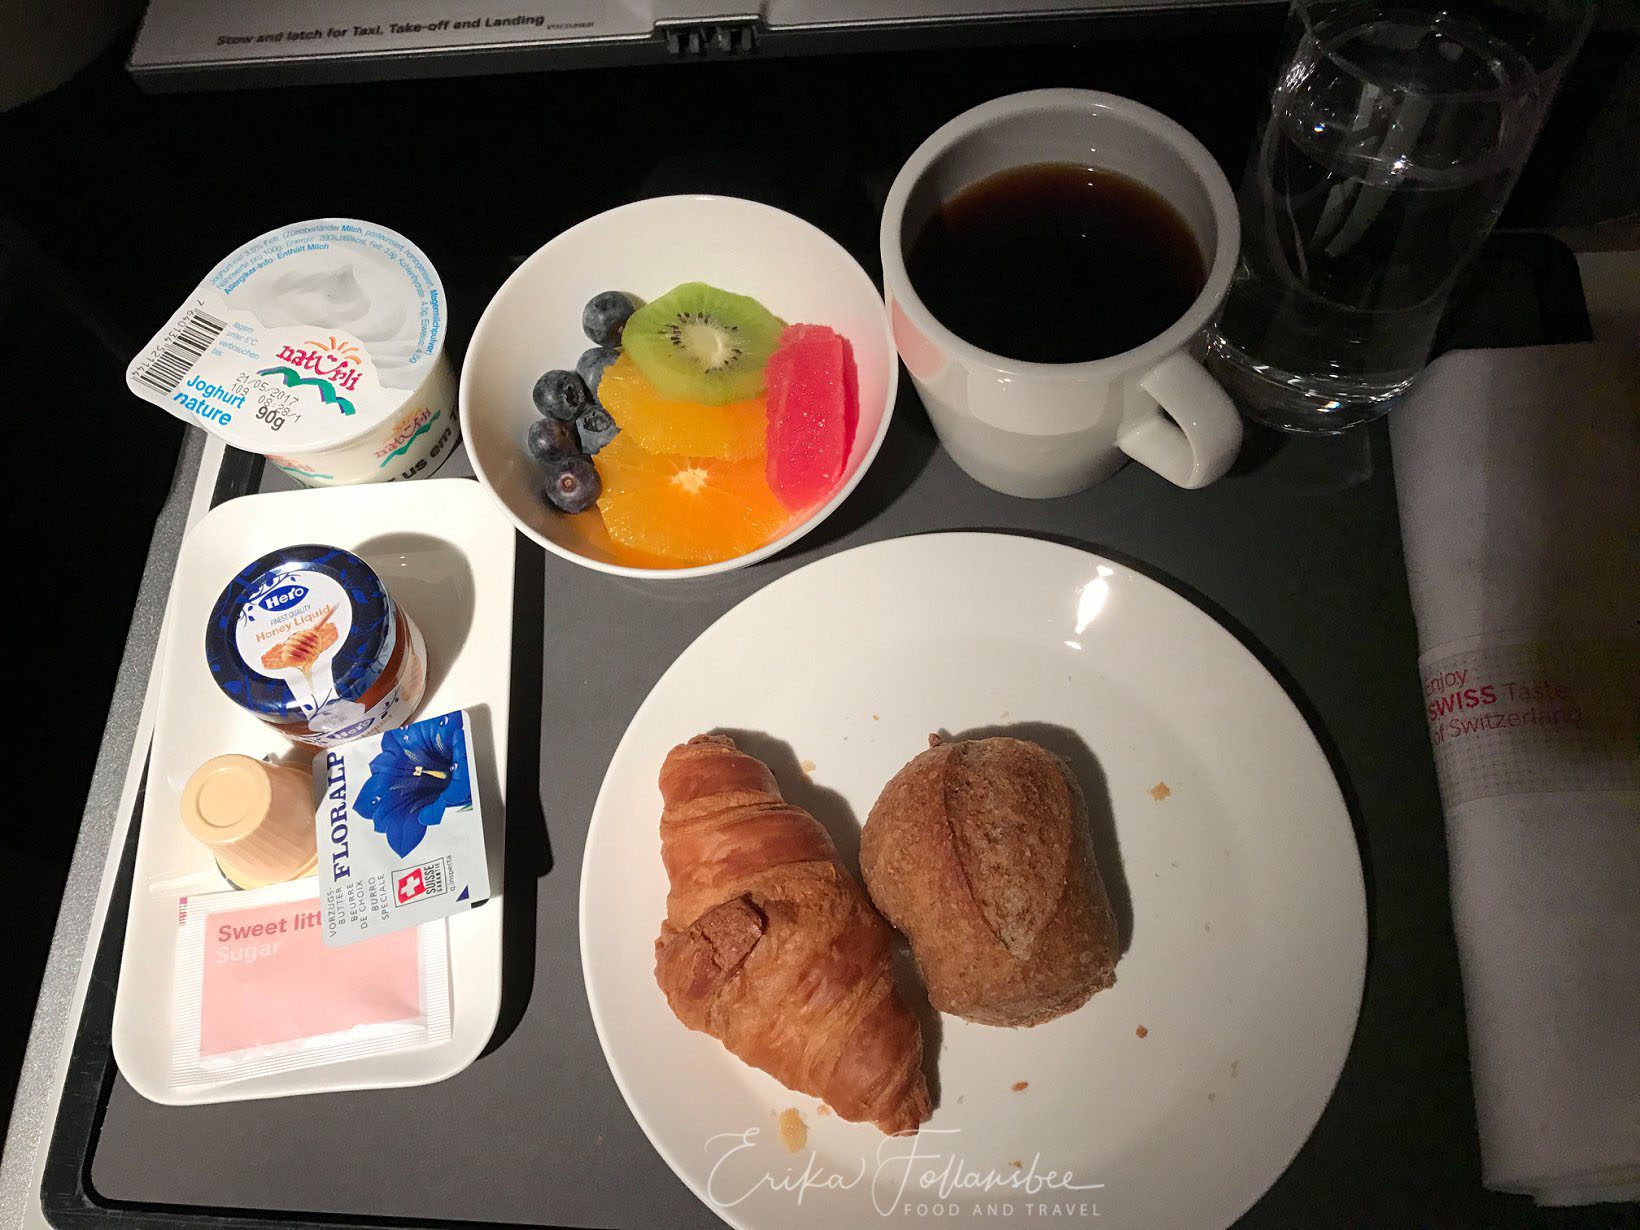 Swiss Air Business Class Menu: breakfast